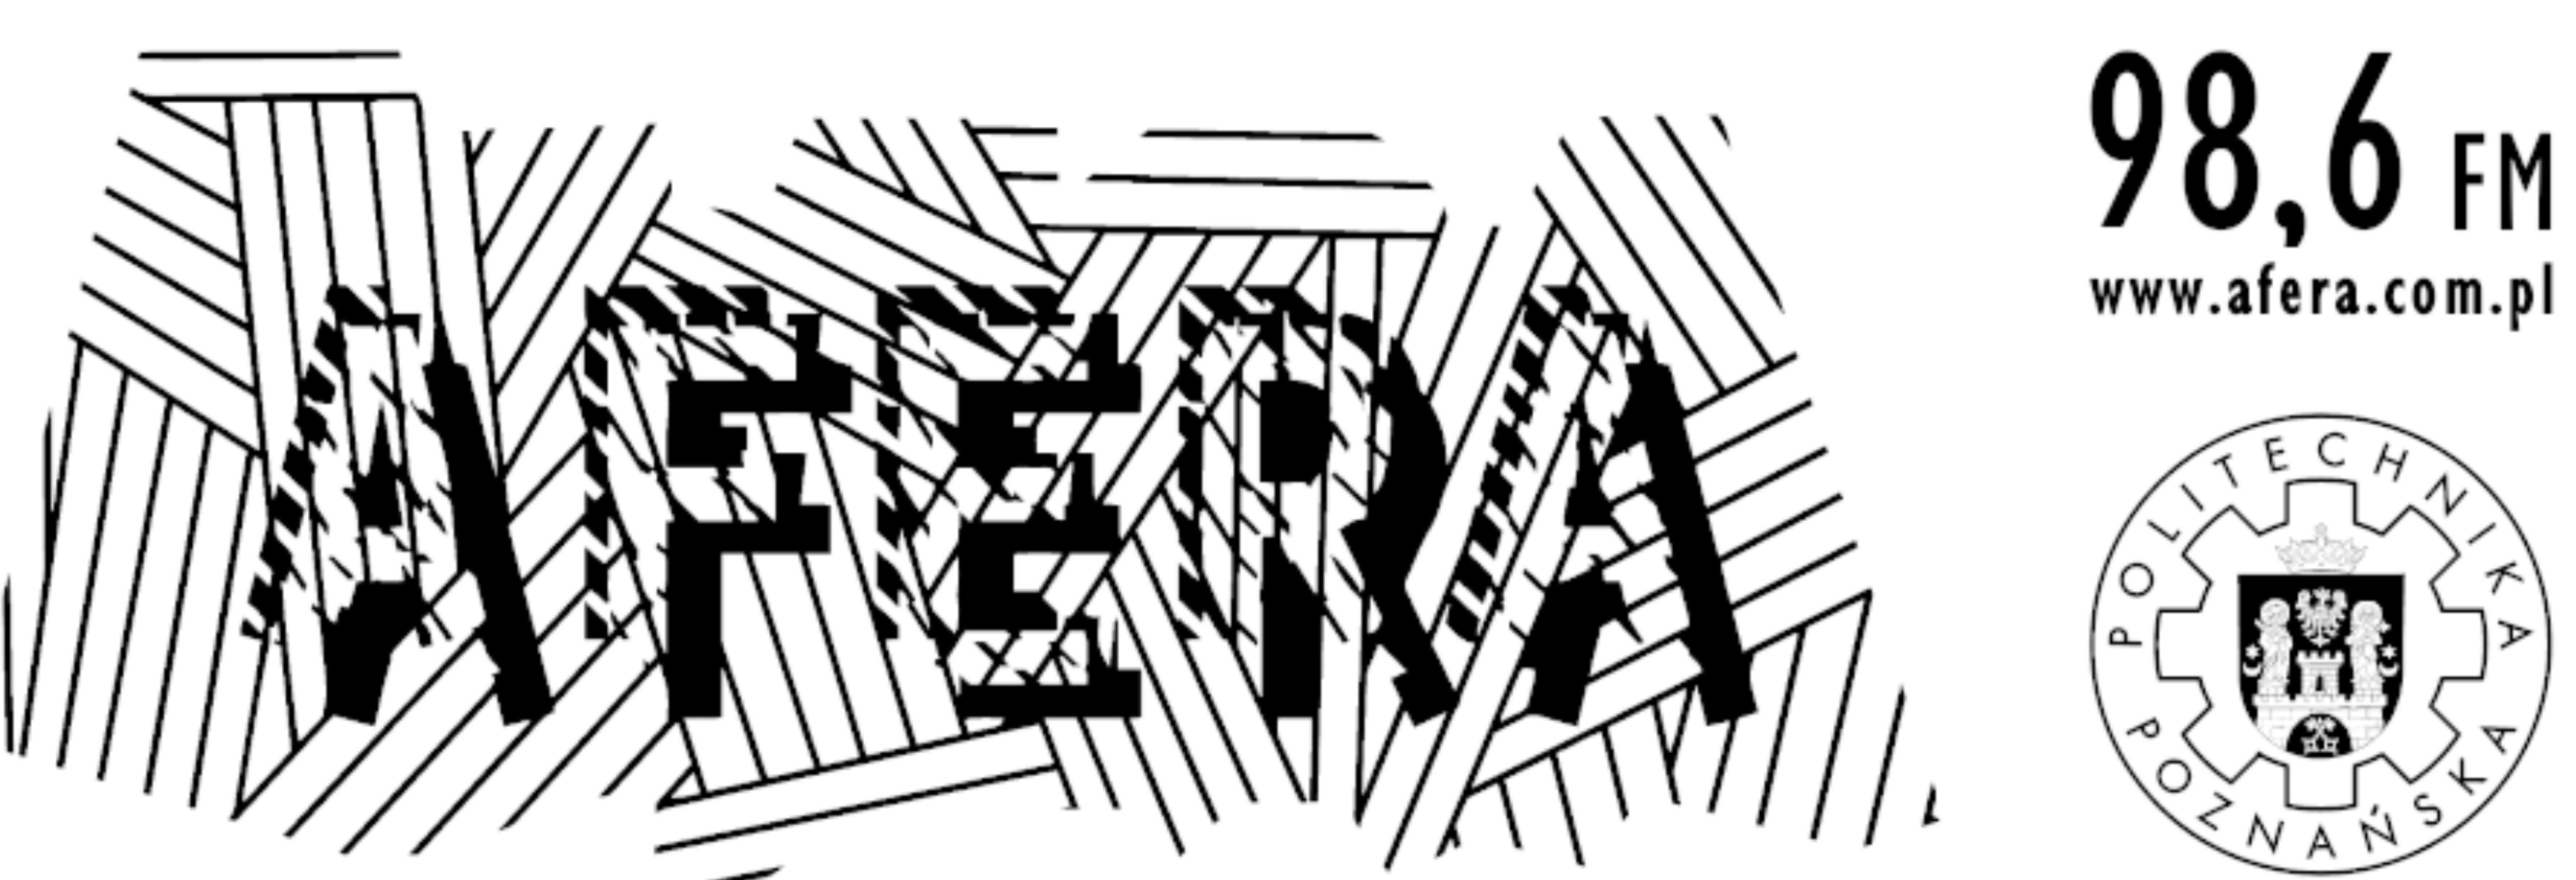 klecha logo